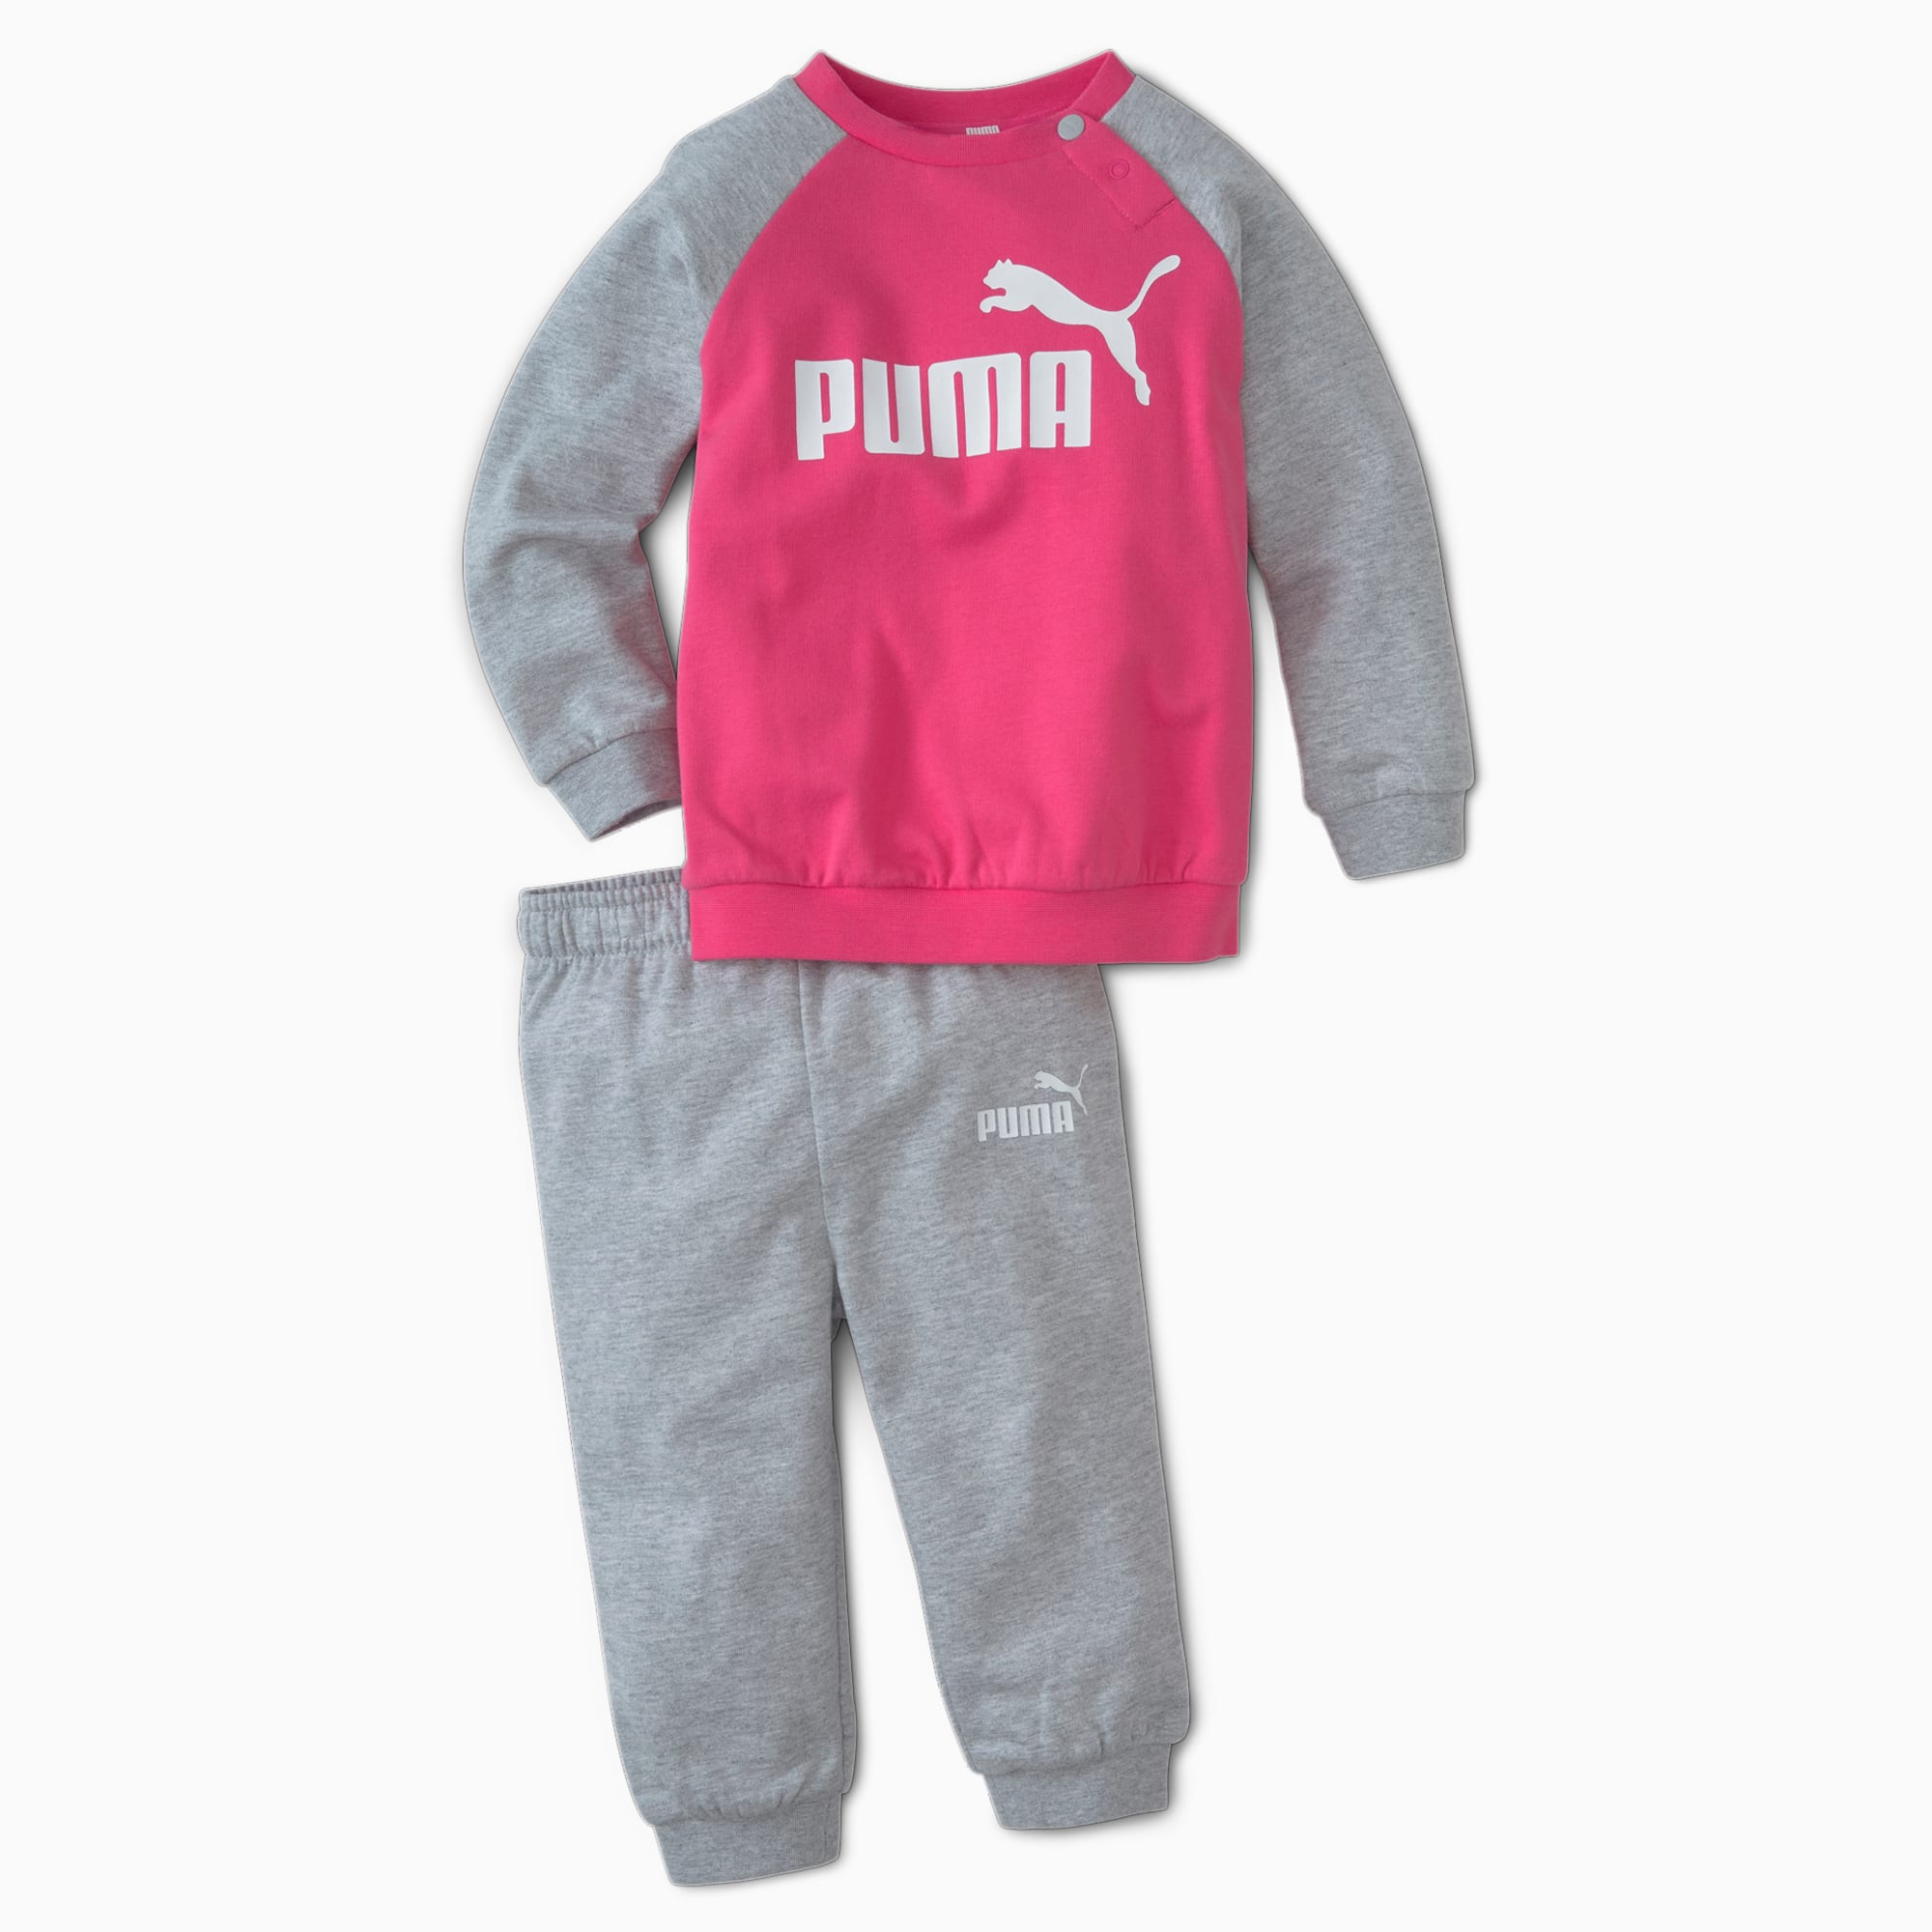 PUMA Survêtement Minicats Essentials Raglan pour bébé, Gris/Bruyère, Taille 68, Vêtements